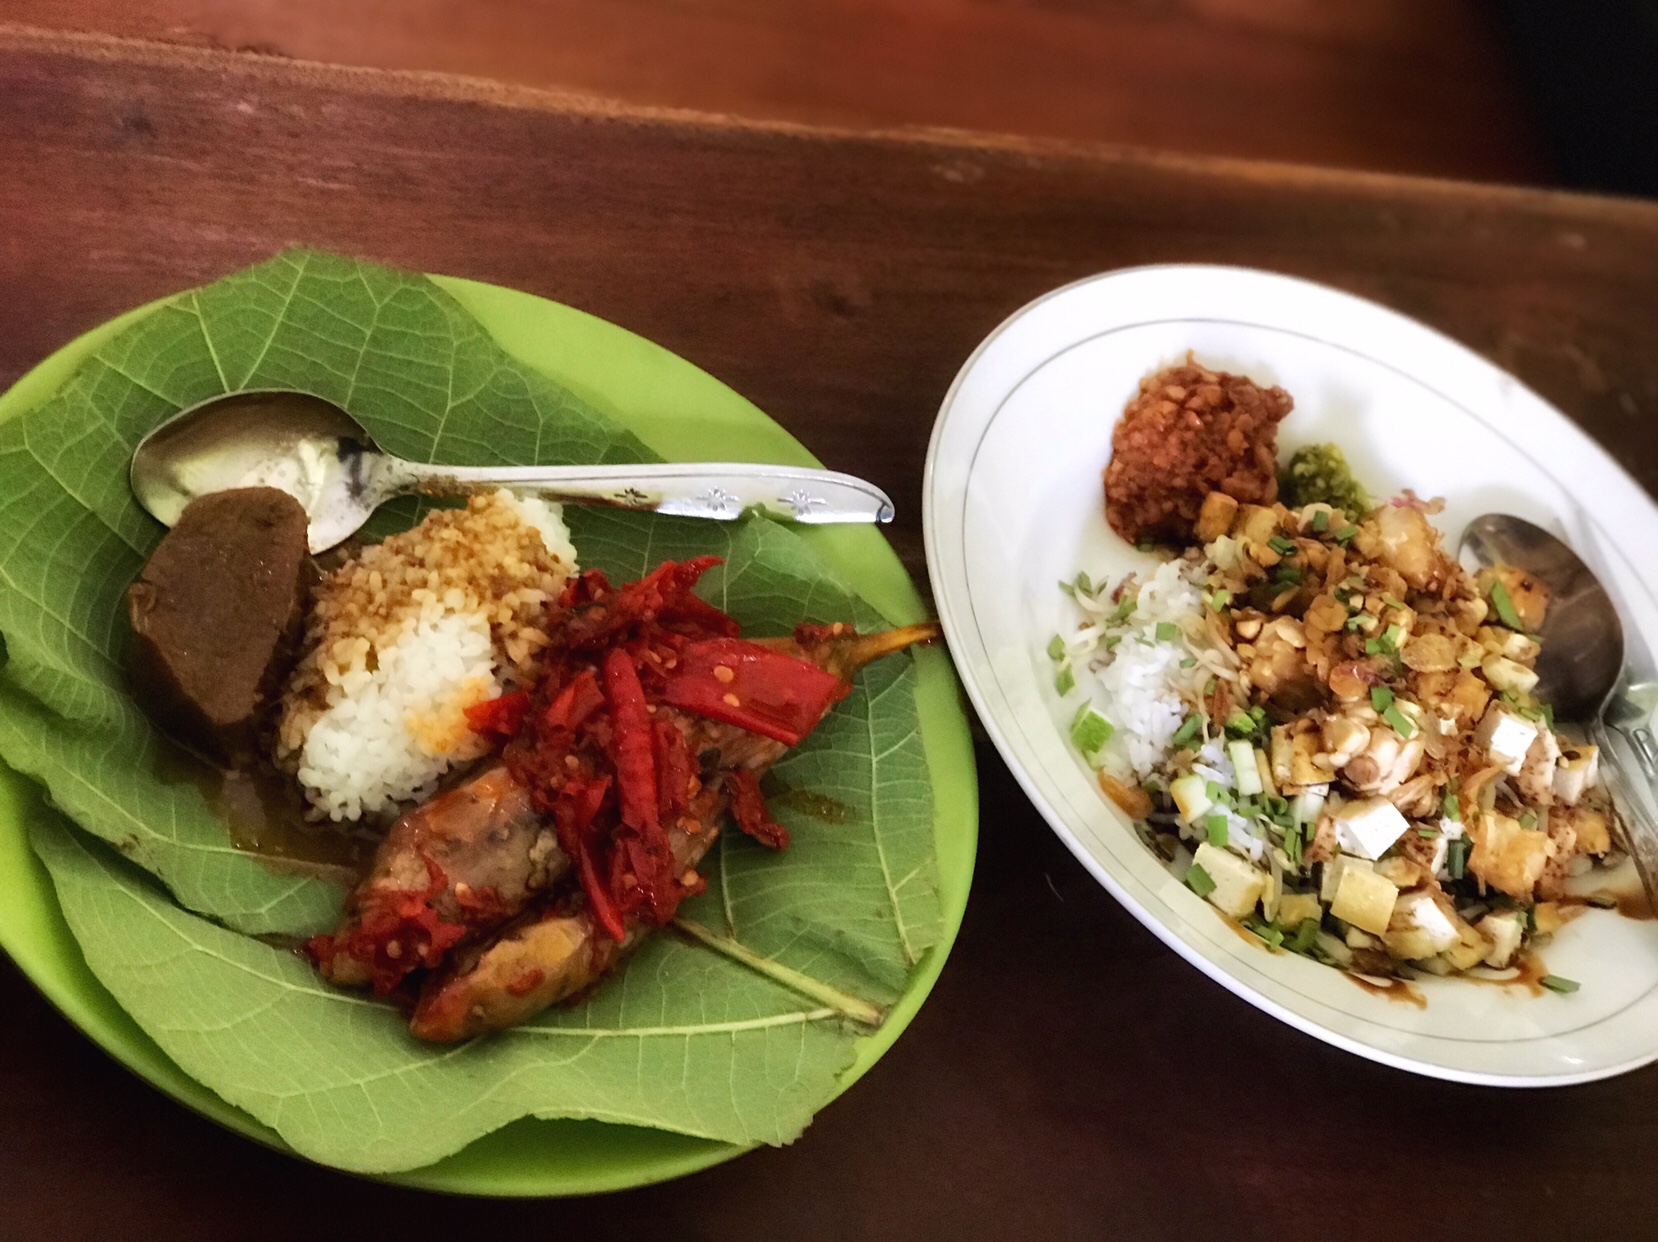 The battle of nasi: Nasi Jamblang vs. Nasi Lengko